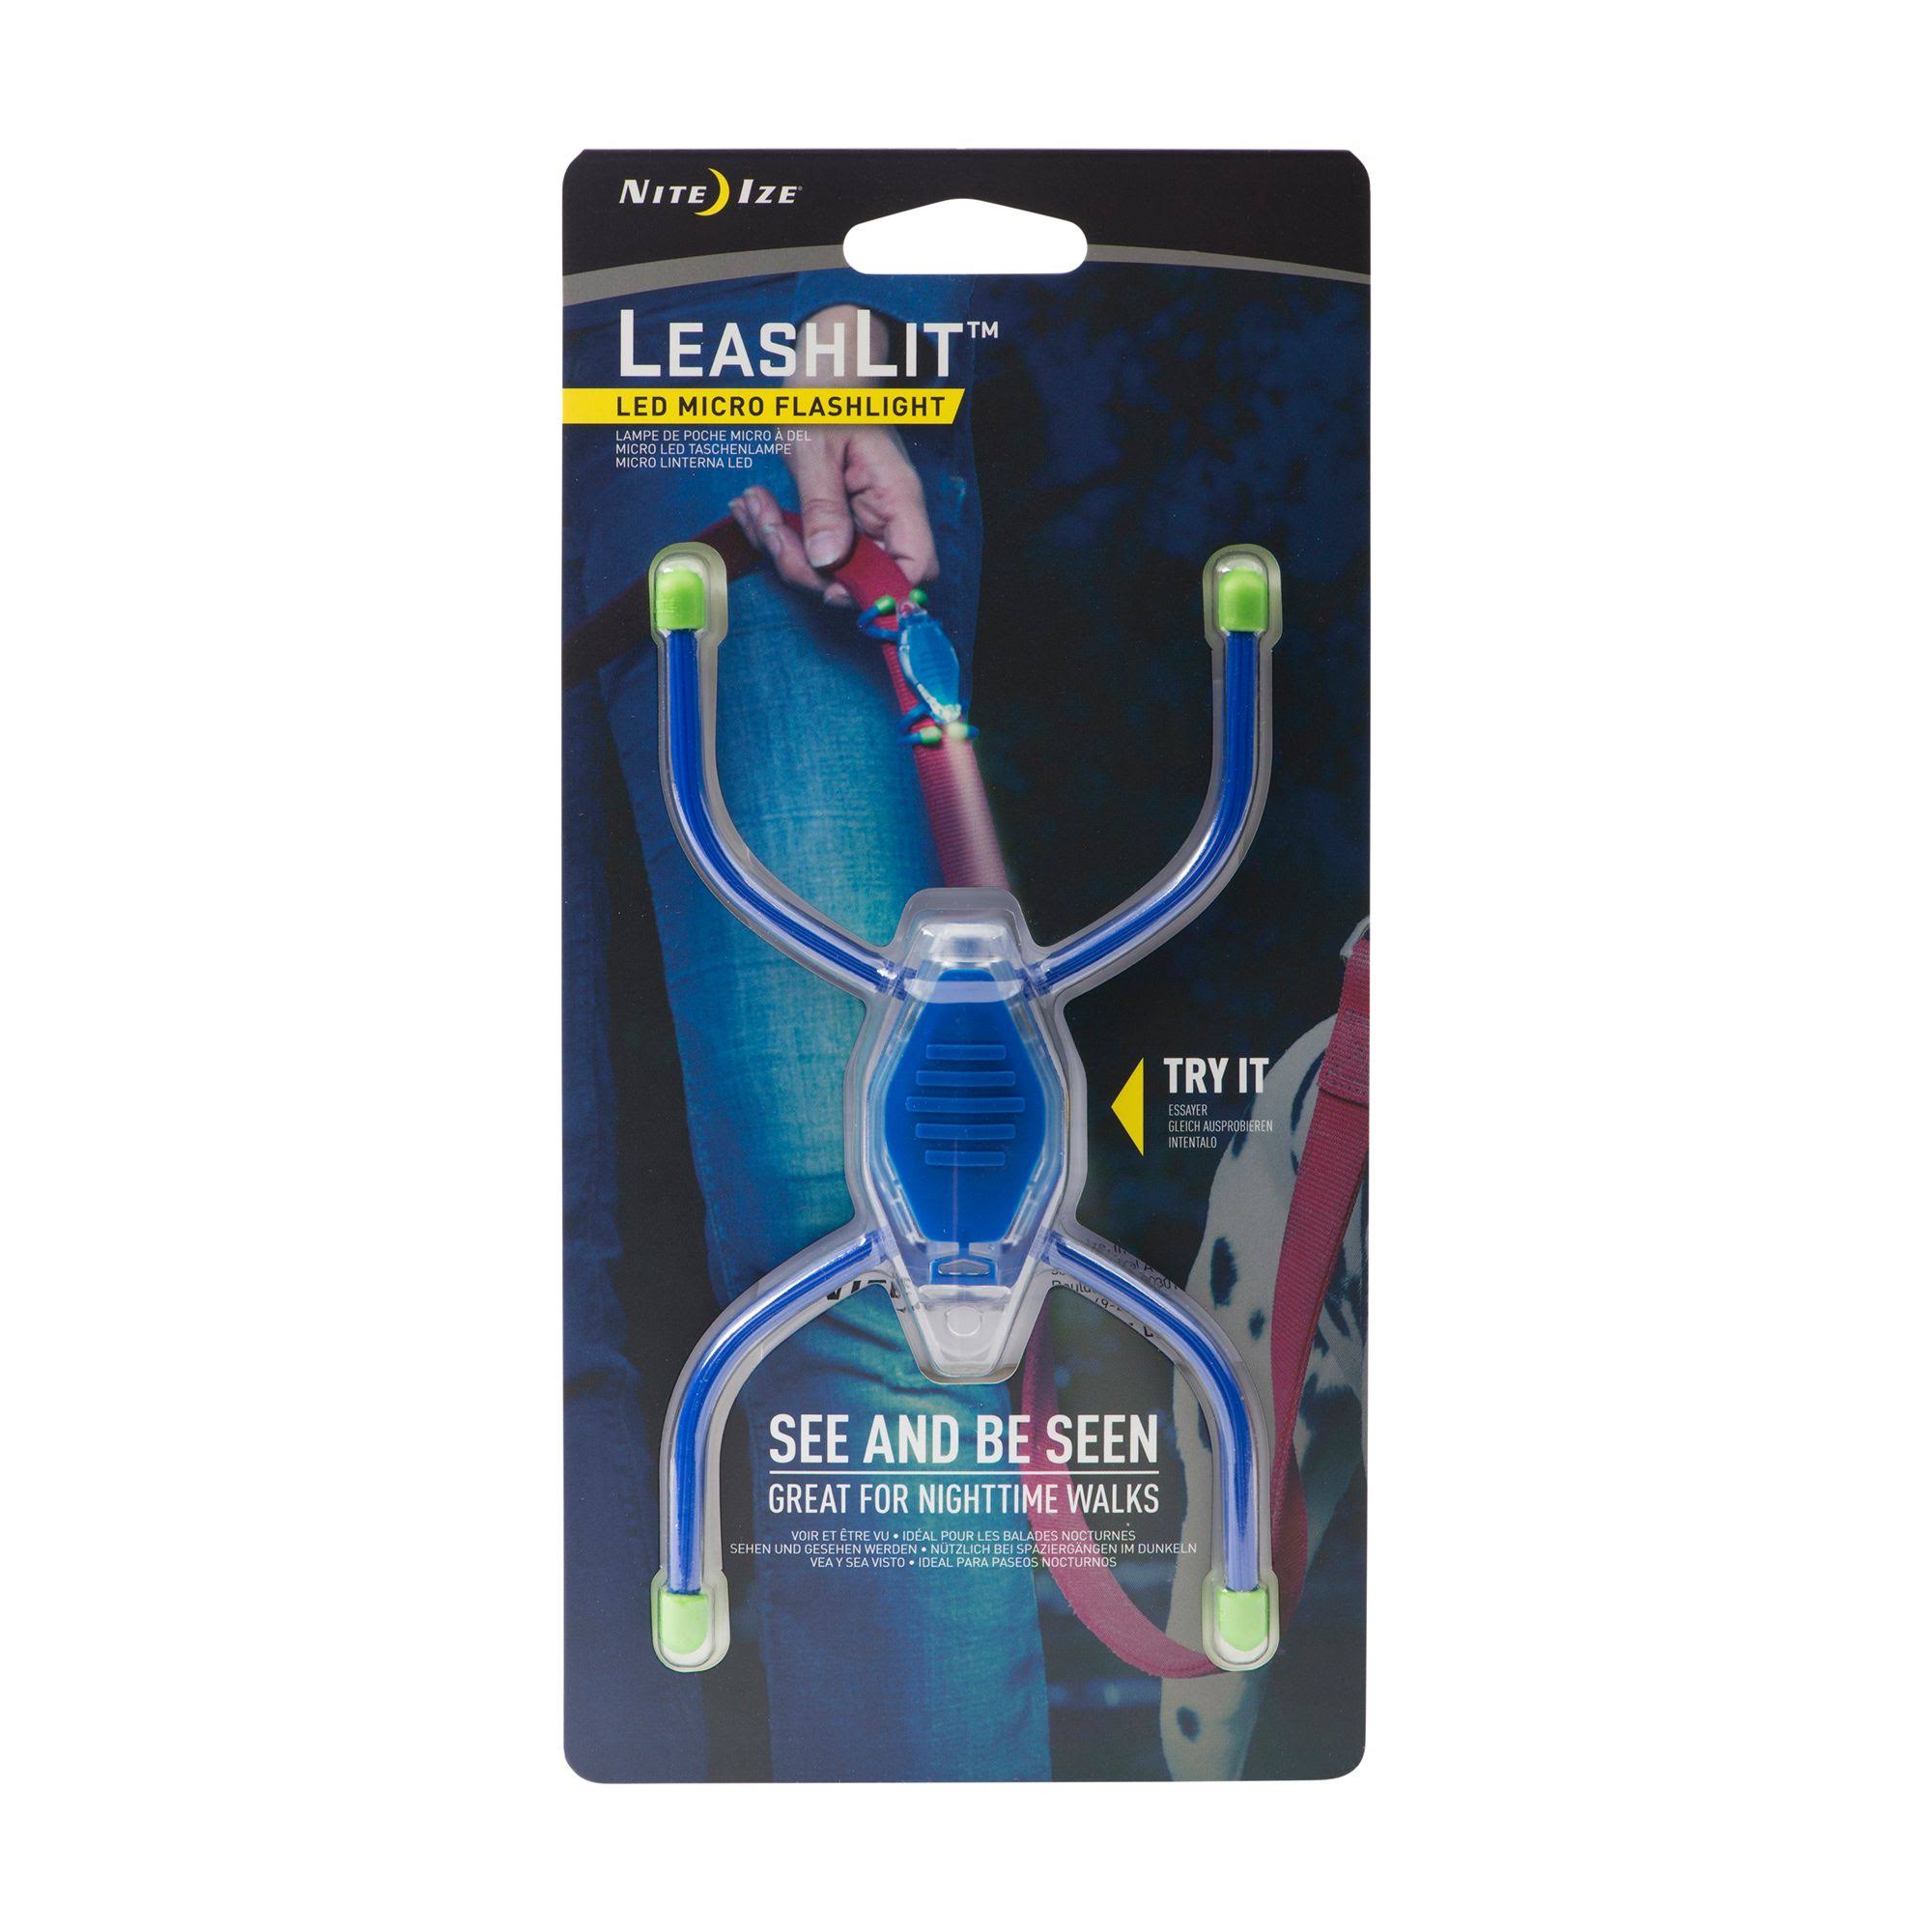 Nite Ize LeashLit LED Micro Flashlight